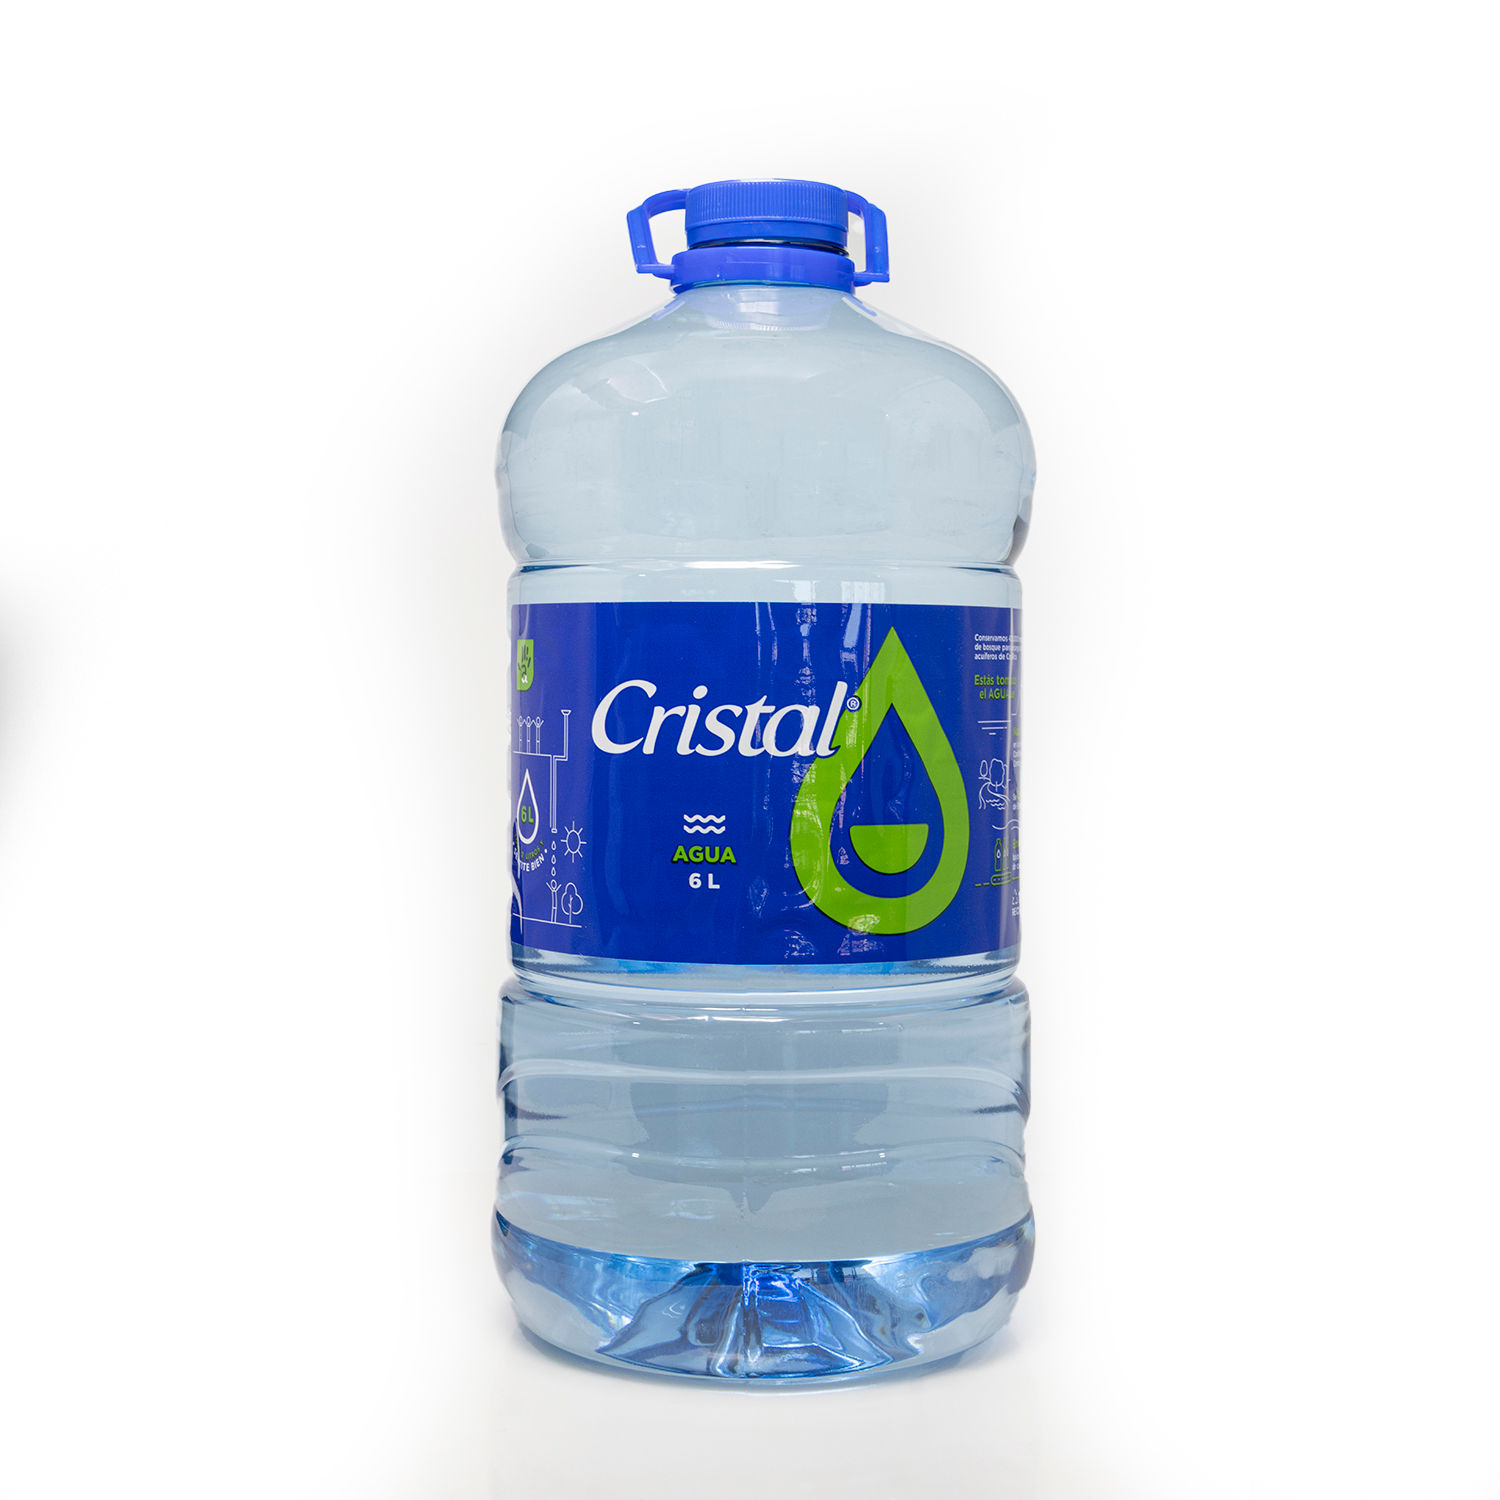 Agua-Cristal 